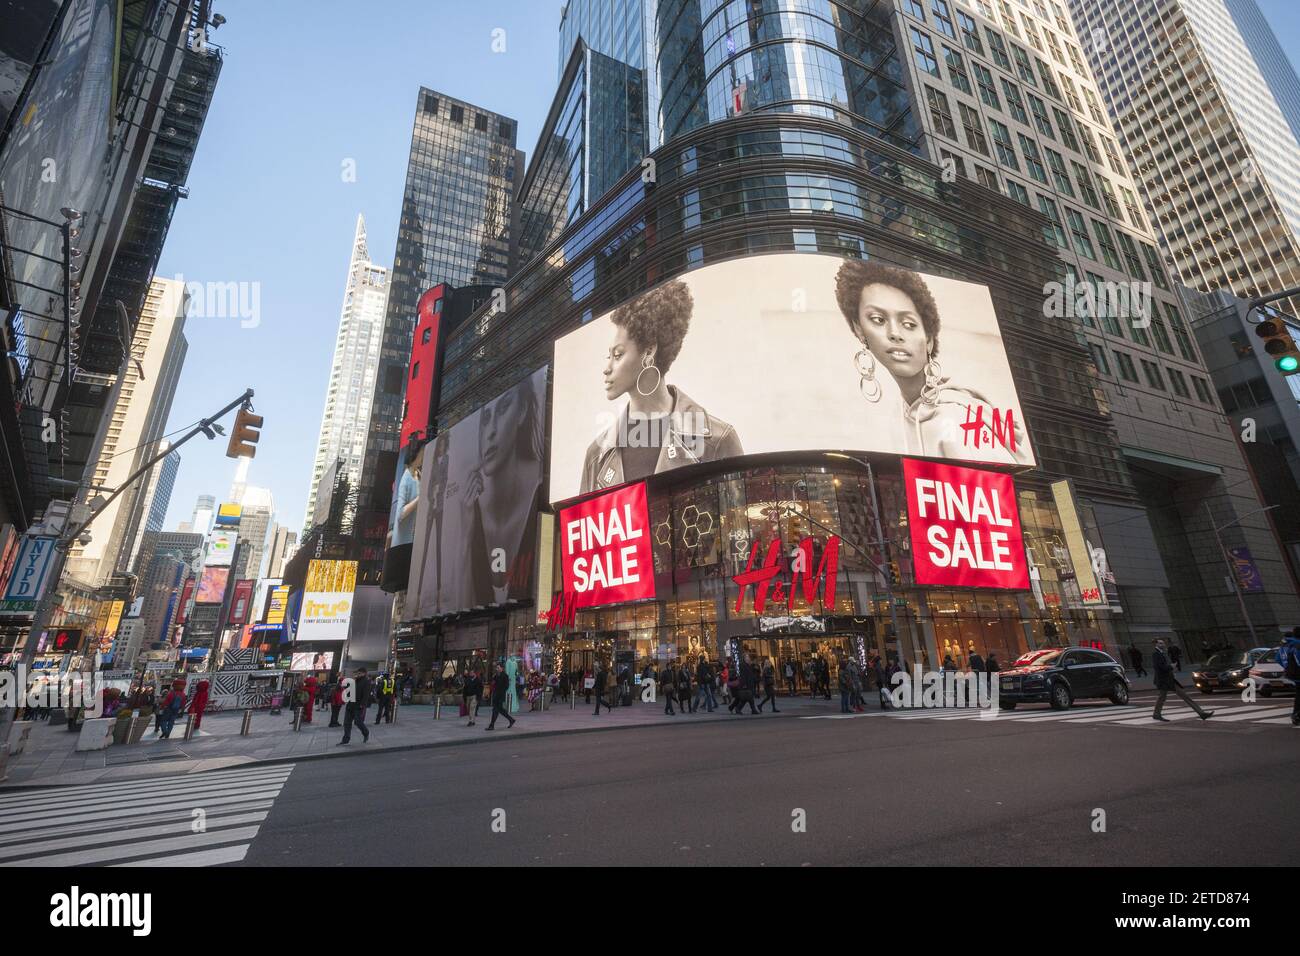 Los grandes almacenes H&M en Times Square anuncian su 'venta final' en  mercancía, vista el miércoles, 25 de enero de 2017. La Junta de la  Conferencia anunció que la confianza de los